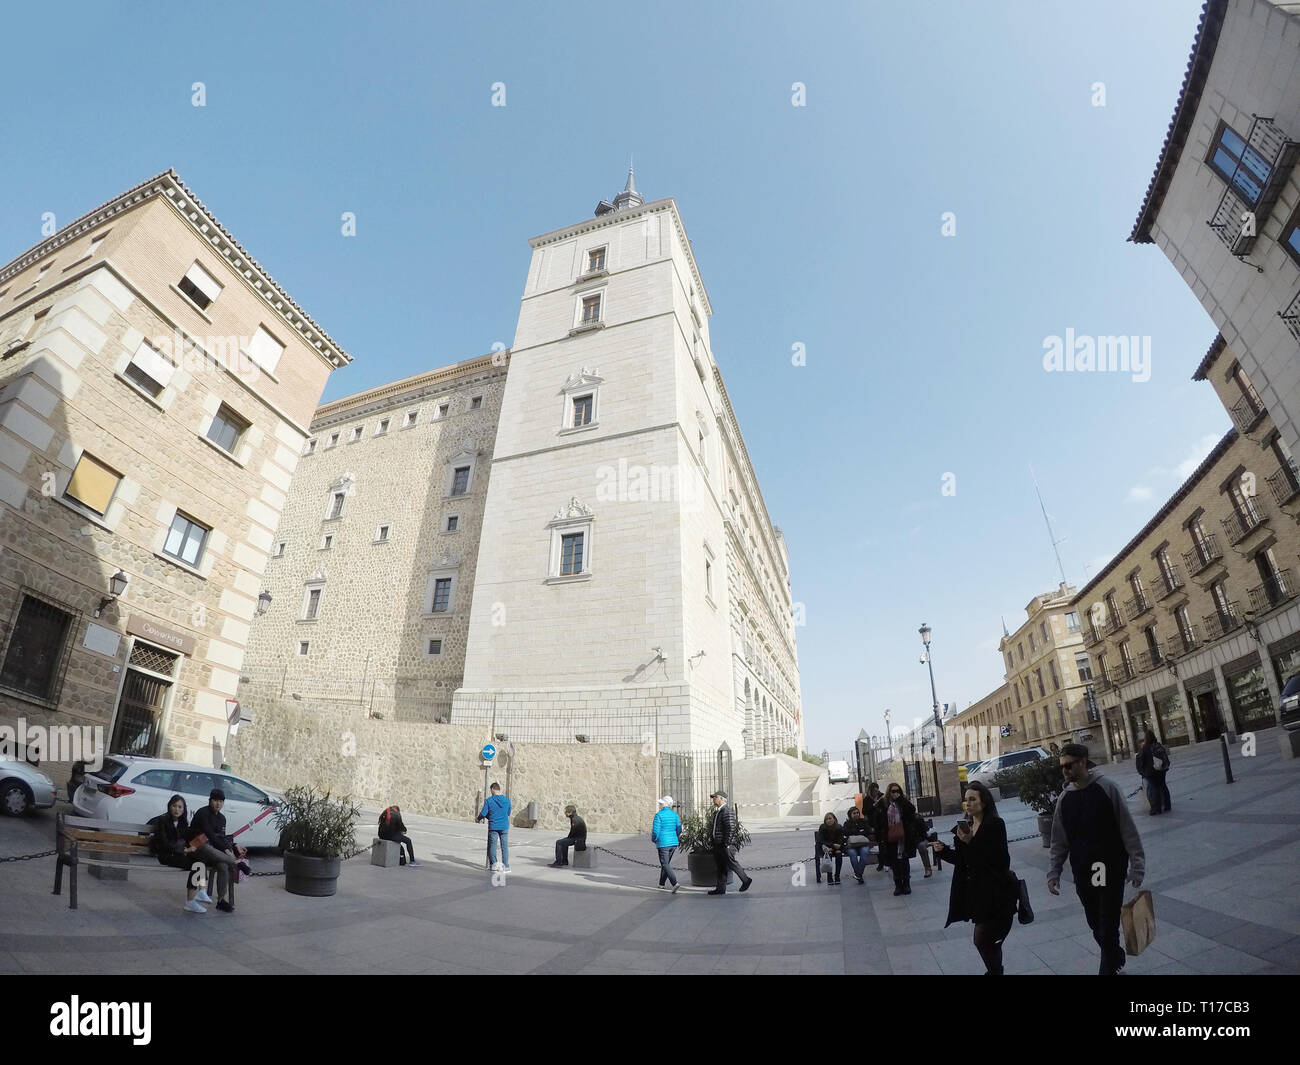 TOLEDO, España - Feb 20, 2019: El Alcázar de Toledo es una fortificación de piedra situada en la parte más alta de Toledo, España. Foto de stock